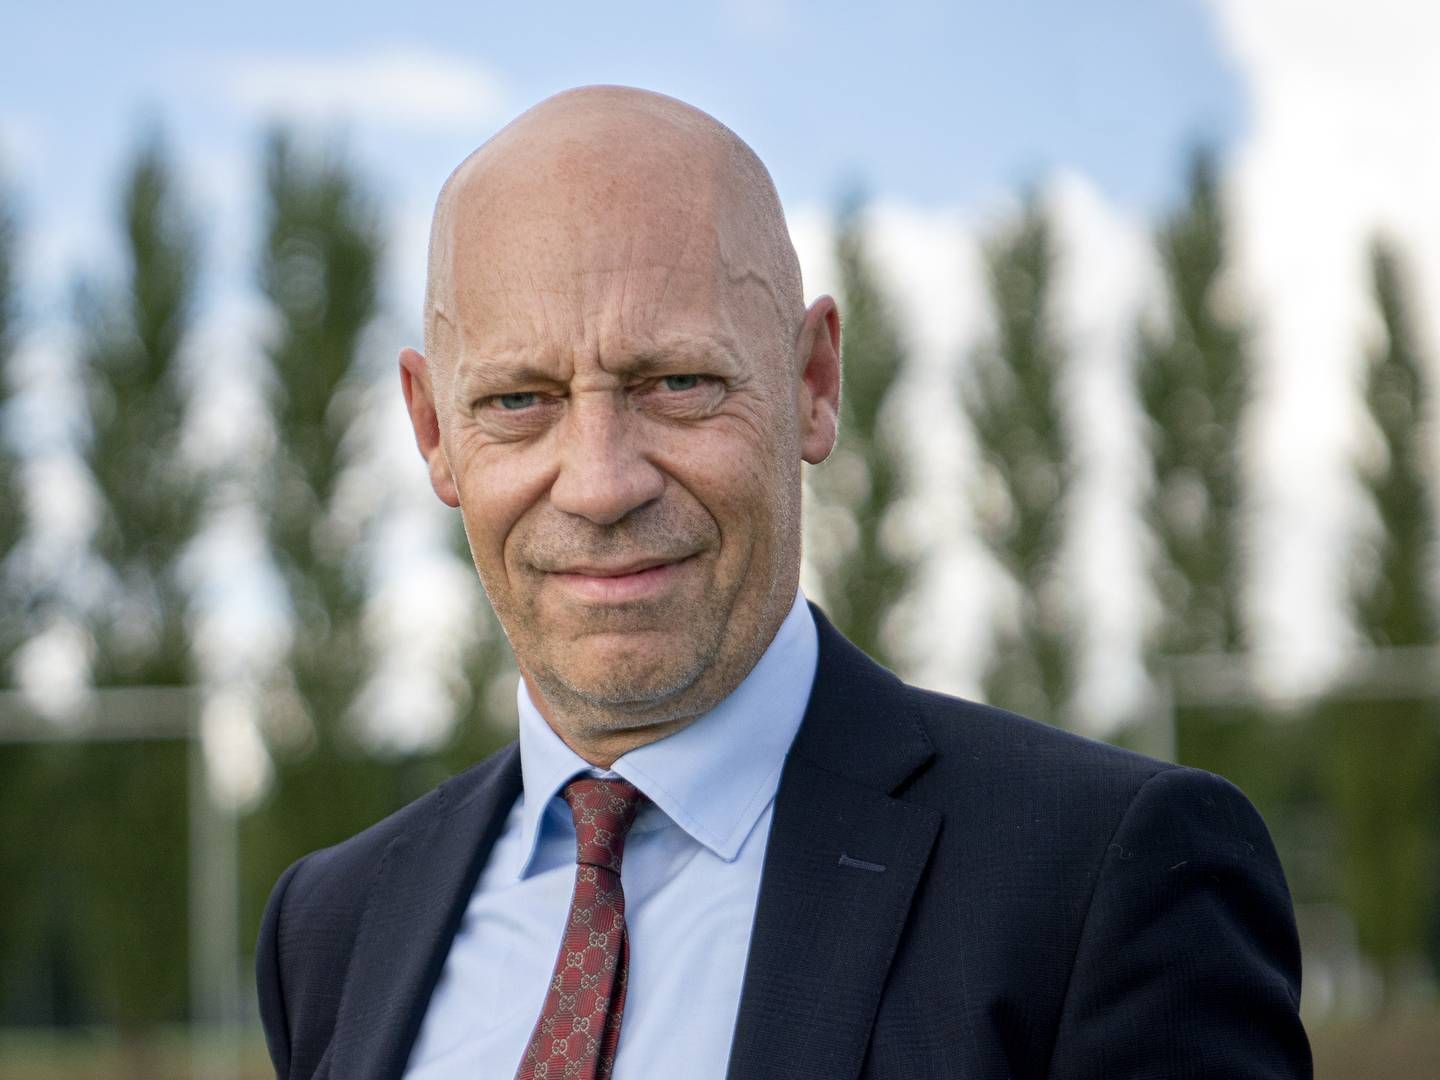 Rasmus Werner Nielsen er adm. direktør i Alm. Brand og har netop investeret en kvart million i forsikringskoncernen. | Foto: Stine Bidstrup/ERH